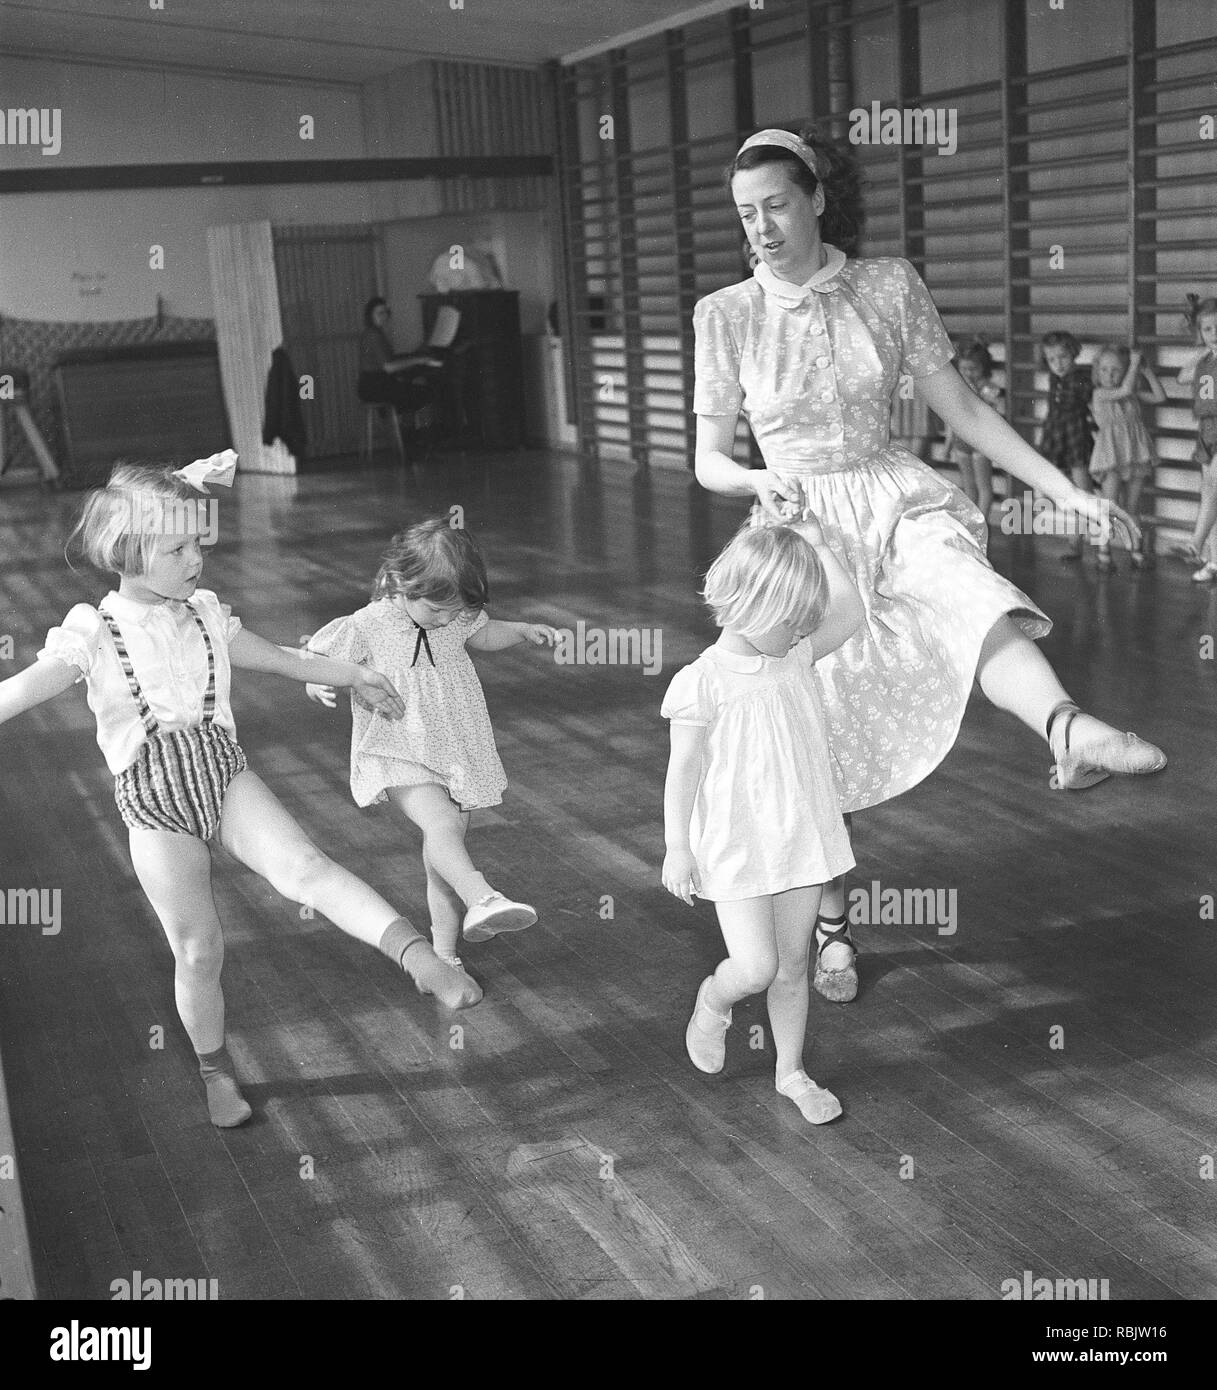 Ginnastica in 1940s. Un insegnante di donne nella palestra della scuola è che mostra come spostare e danza. Tre bambini in età diverse cerca di seguire il suo piombo. Foto Kristoffersson Ref AC3-1. La Svezia 1940s Foto Stock